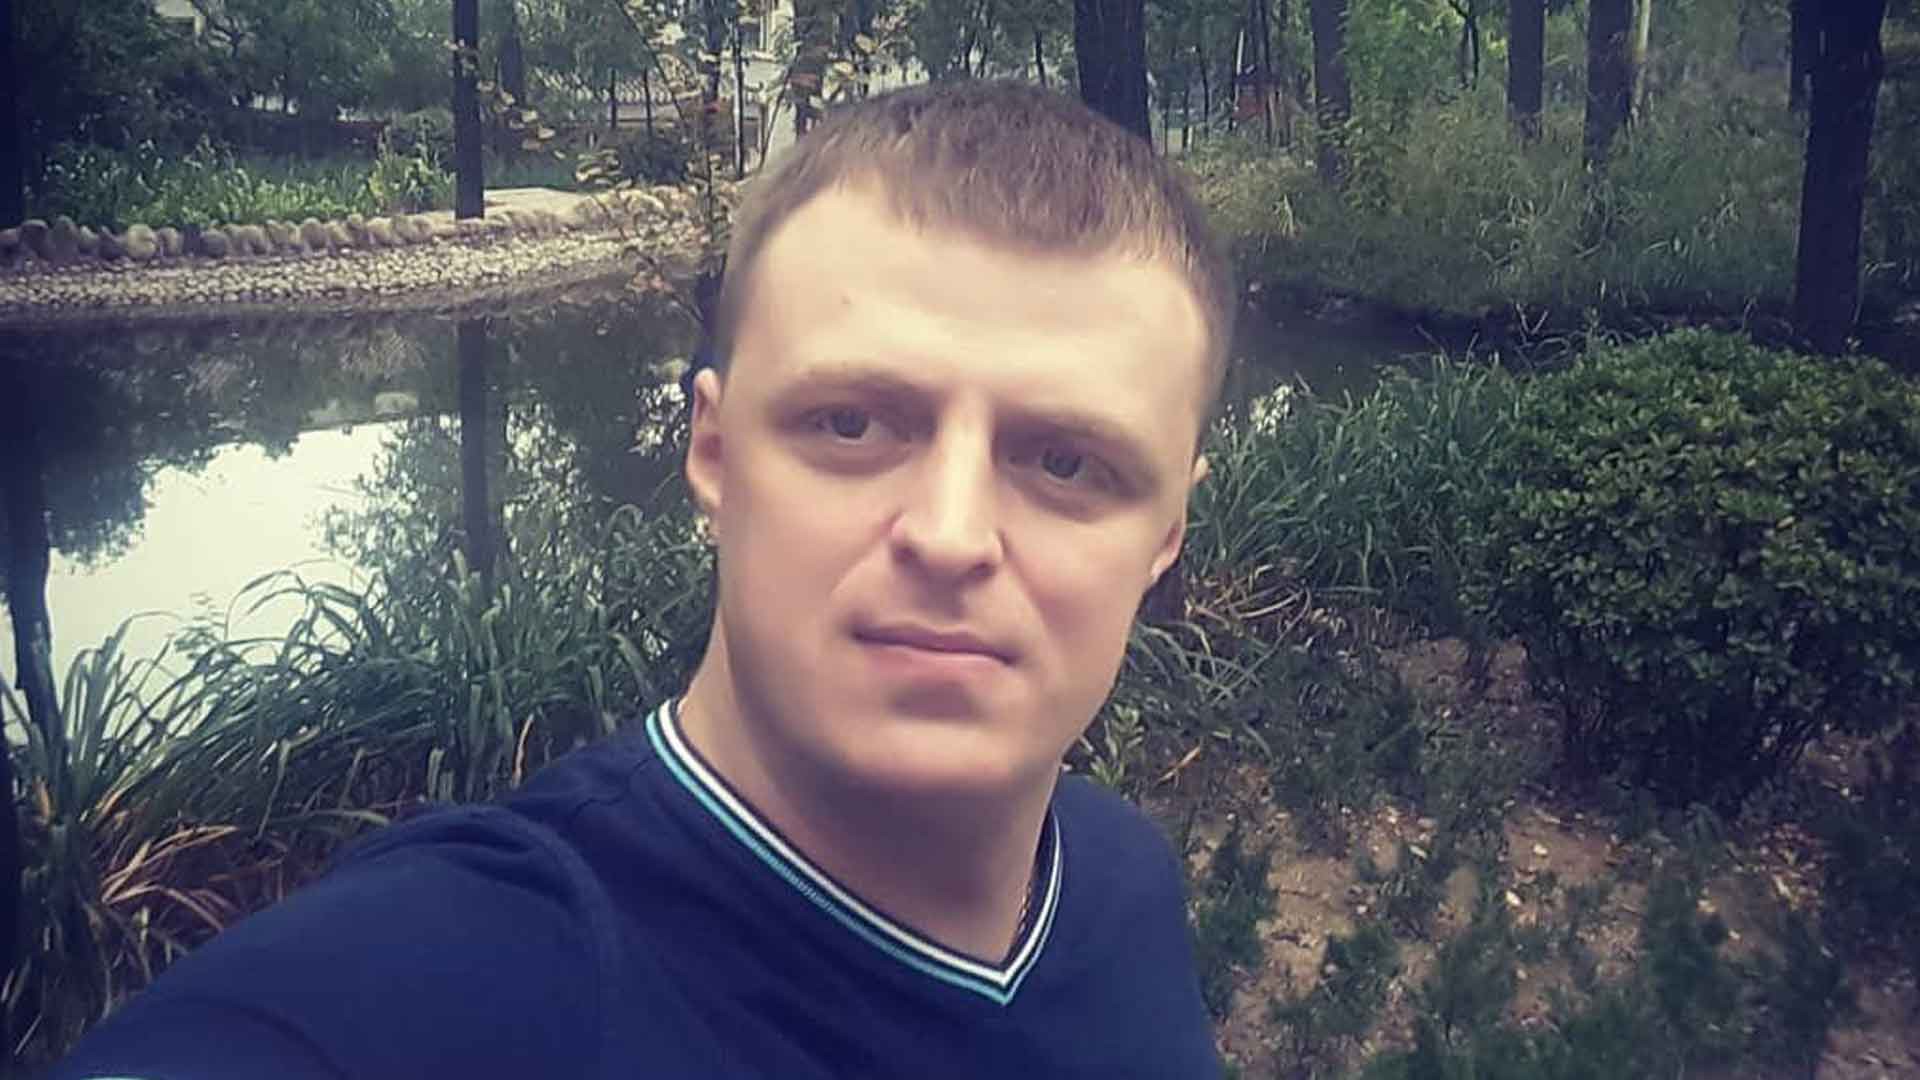 Dailystorm - СМИ: В Хабаровске задержали сына экс-губернатора Фургала